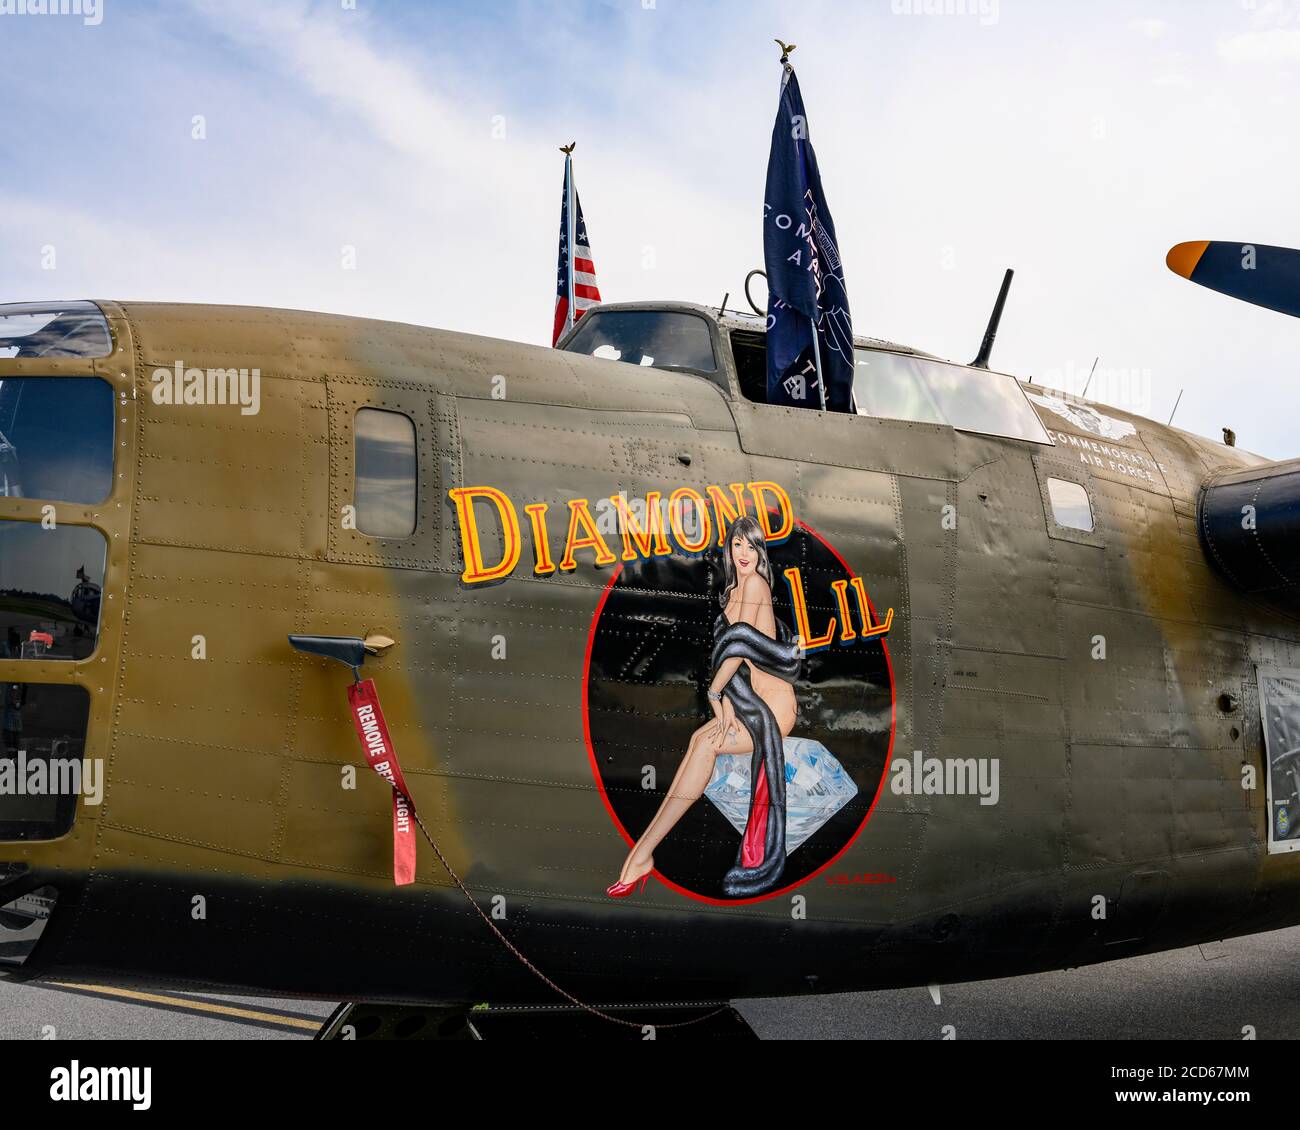 Deuxième Guerre mondiale ou WW2 B-24 le bombardier Liberator, le Lil Diamant, avec art du nez, exposé à Montgomery Alabama, Etats-Unis. Banque D'Images